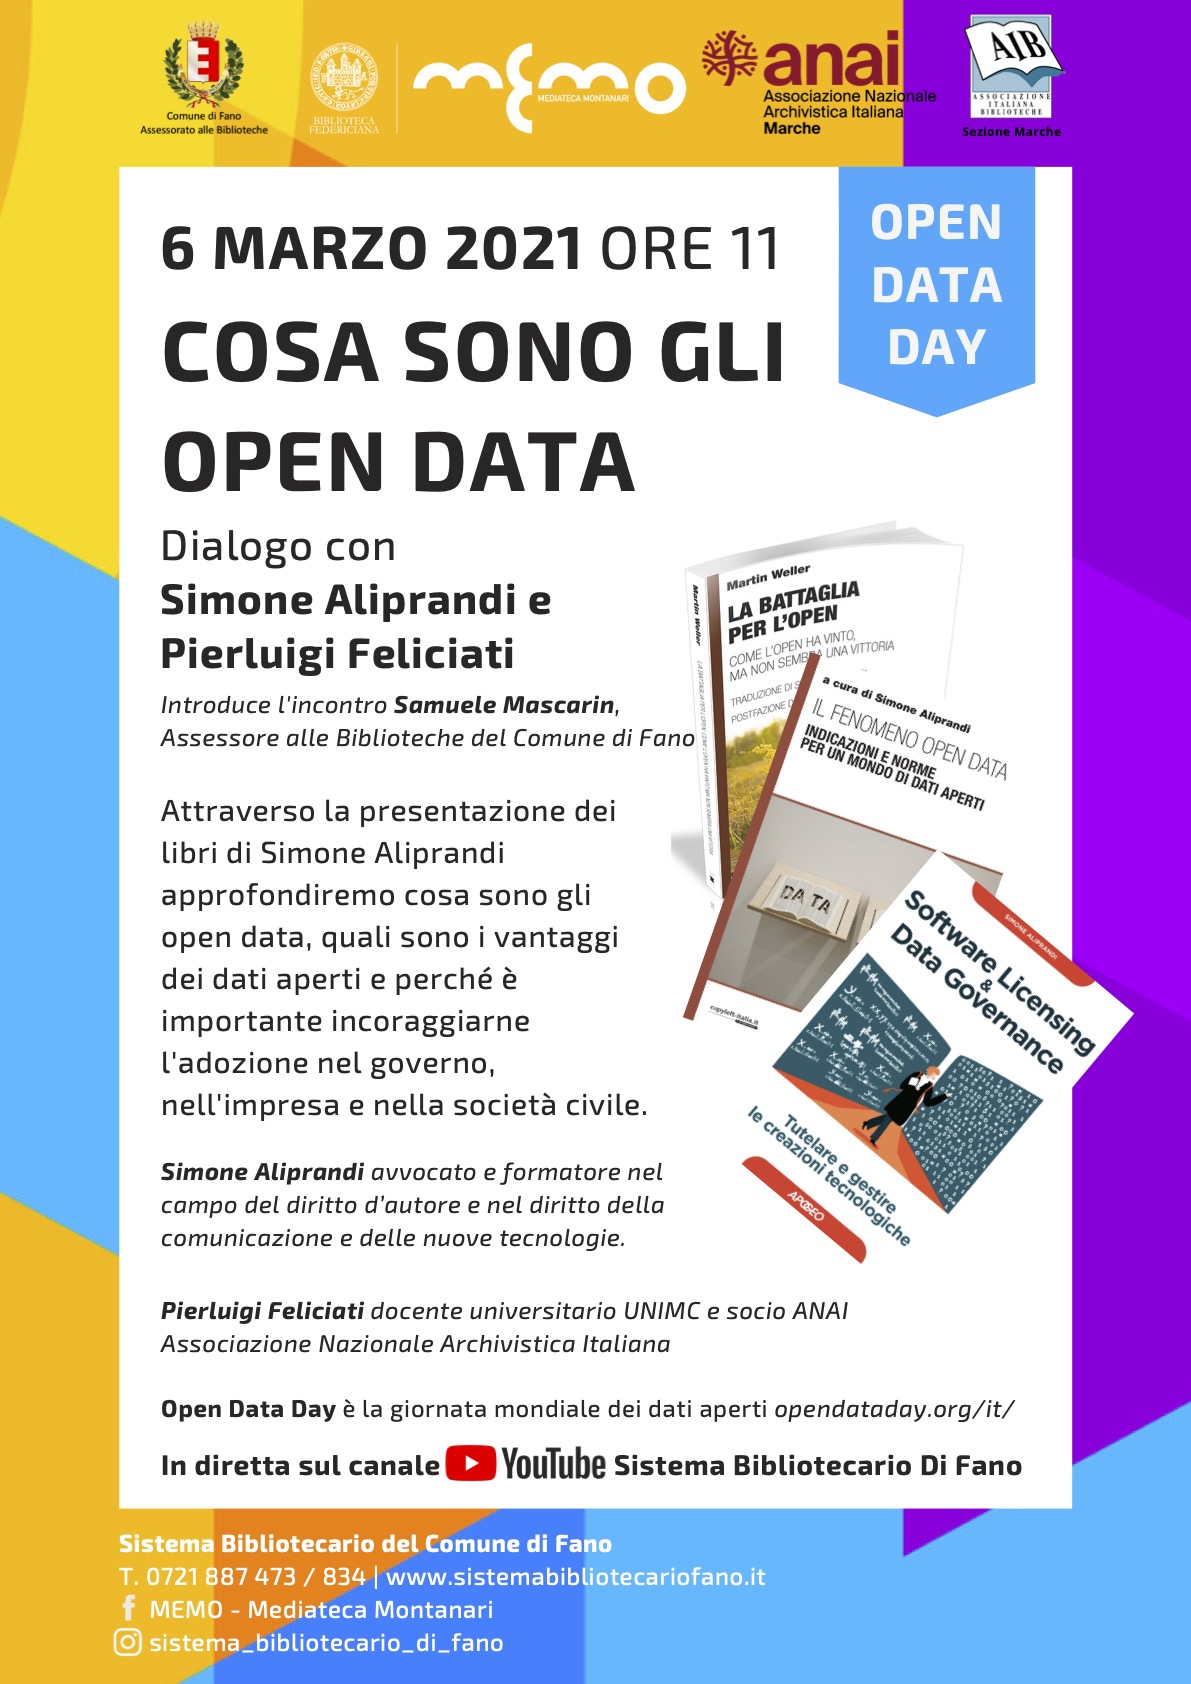 Open Data Day 2021: lo celebrerò online con il Sistema Bibliotecario Di Fano